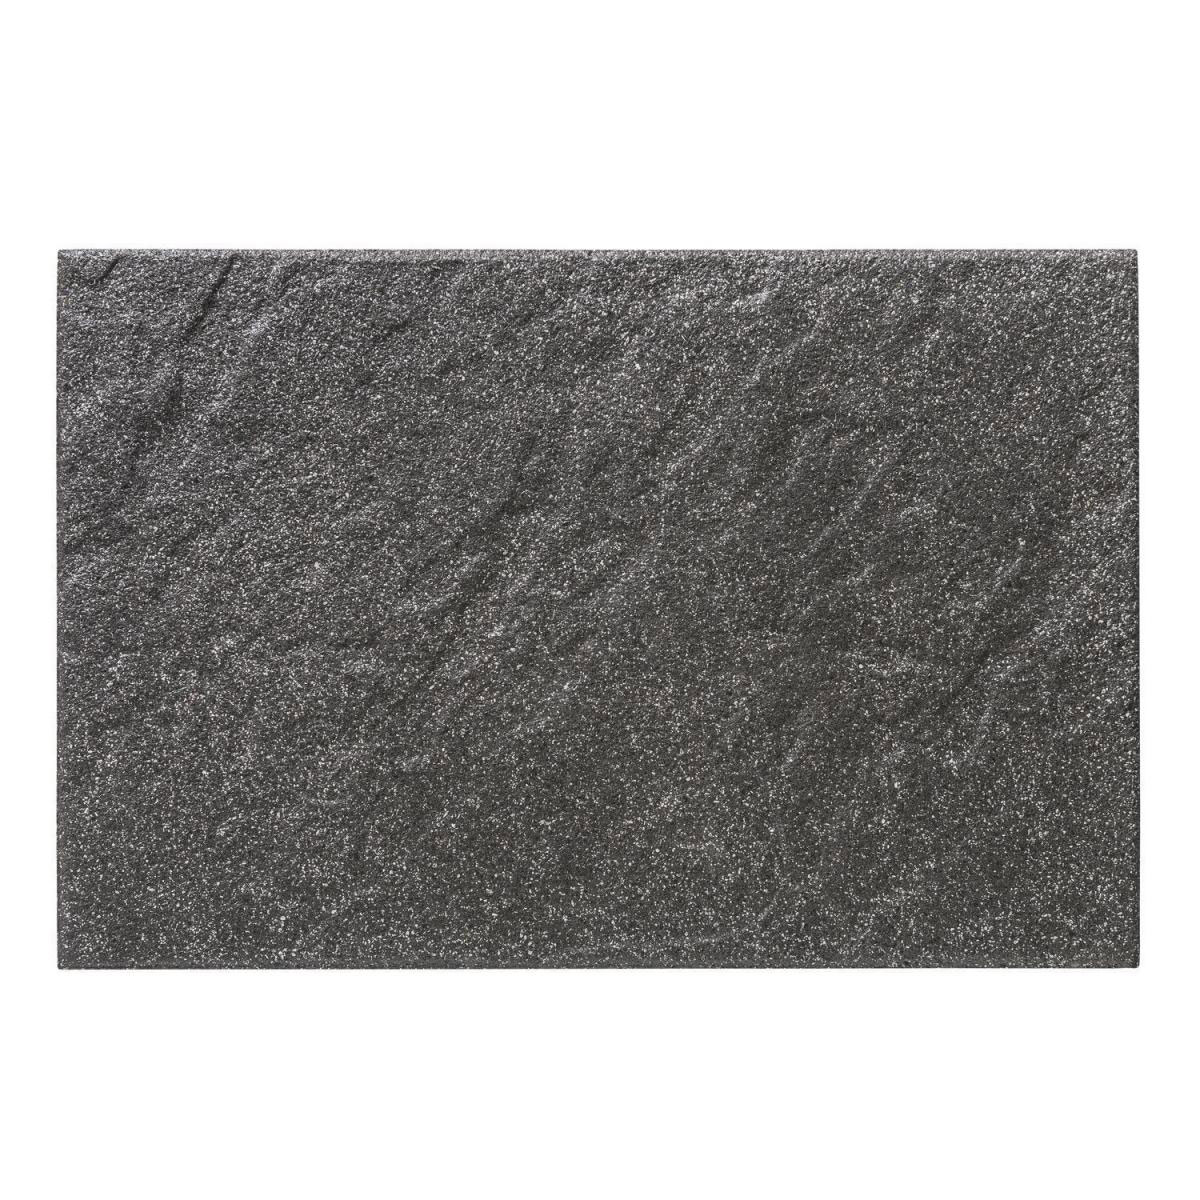 Diephaus Terrassenplatte Corso Weiß-Schwarz 60 x 40 x 4 cm kaufen